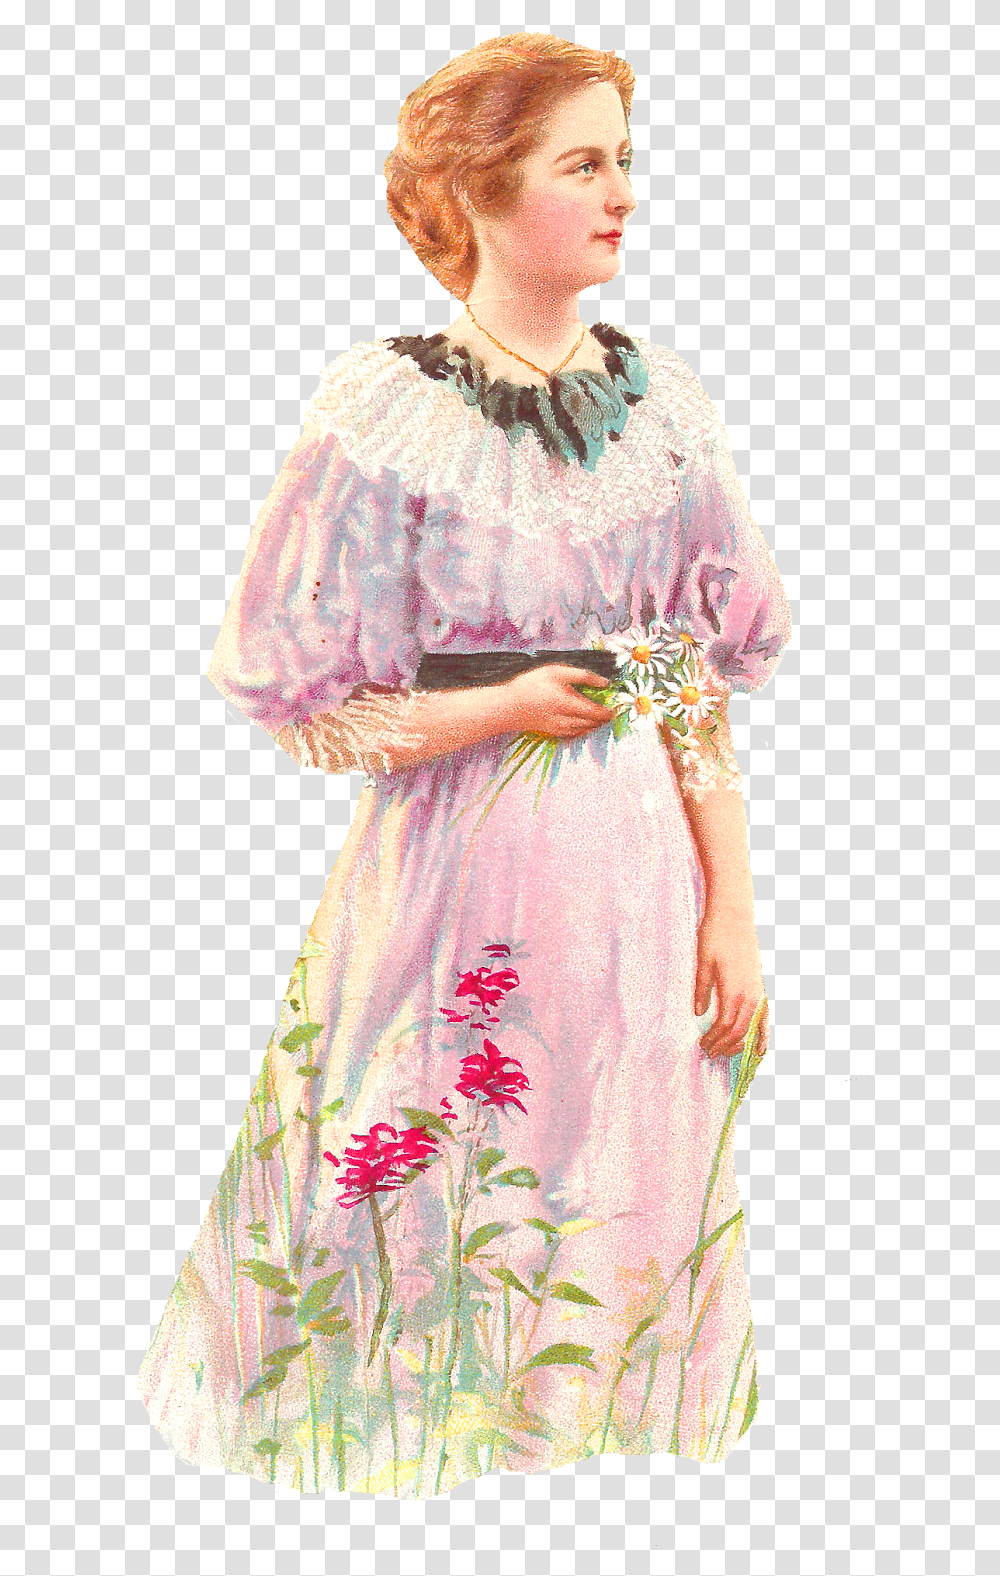 Woman Vintage Image Digital Image Woman Clipart Vintage Gown, Person, Fashion, Evening Dress Transparent Png